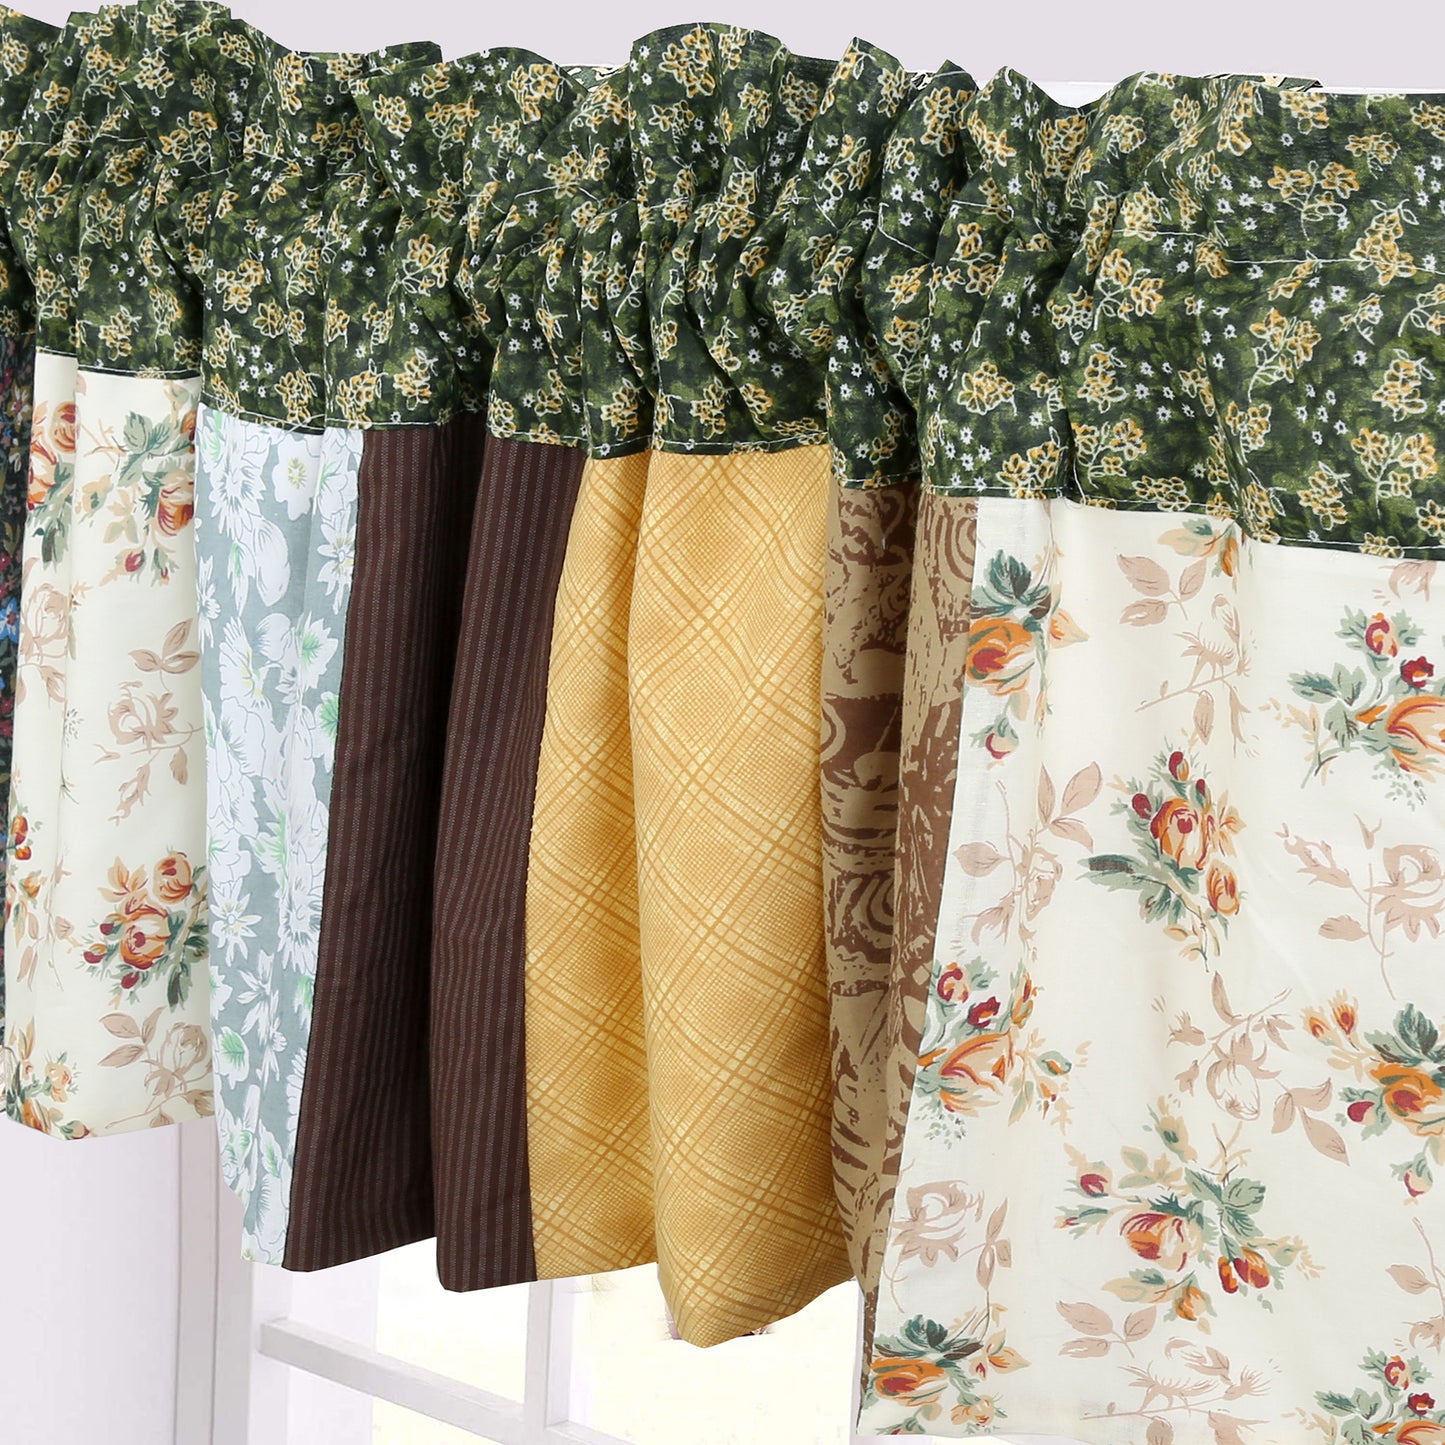 Huitt Country Farmhouse Vintage Floral Real Patchwork Cotton 3-Piece Reversible Quilt Bedding Set